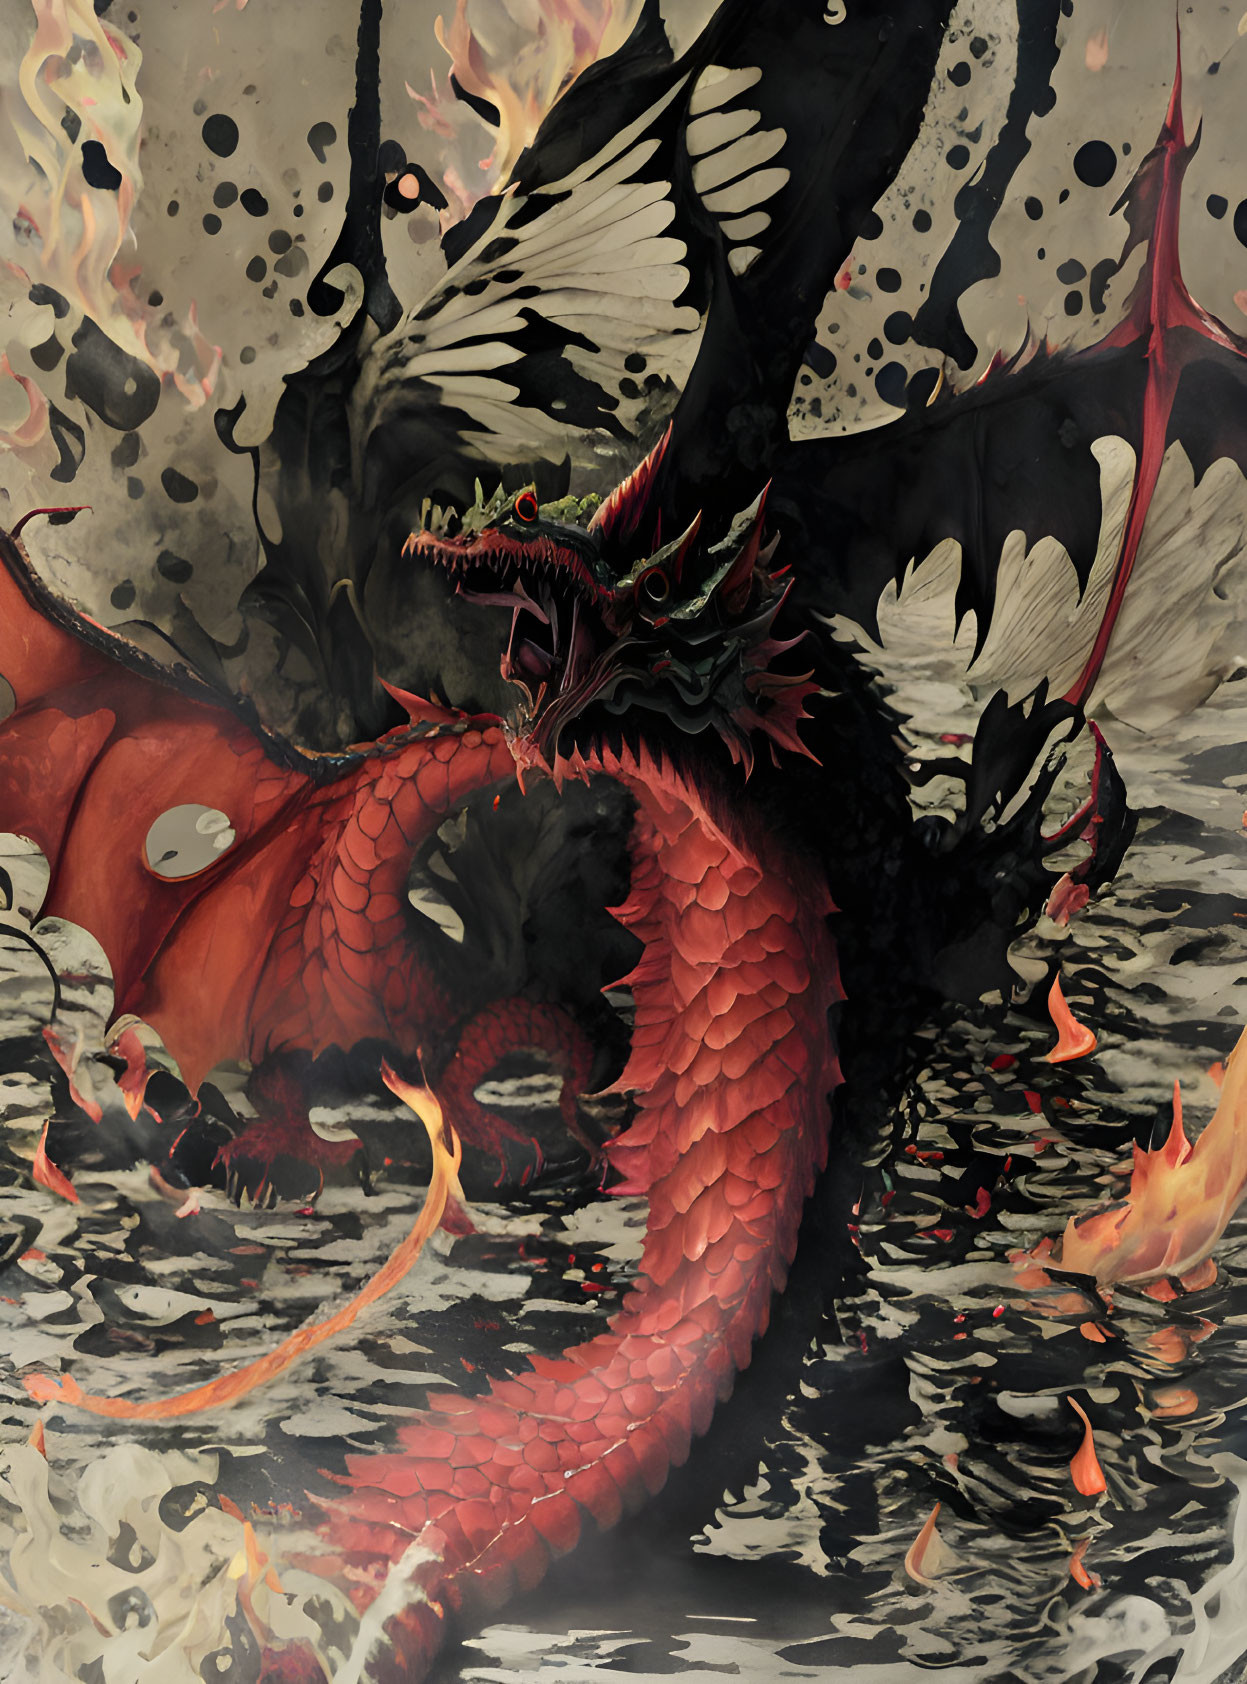 Red multi-headed dragon breathing fire in smoky backdrop